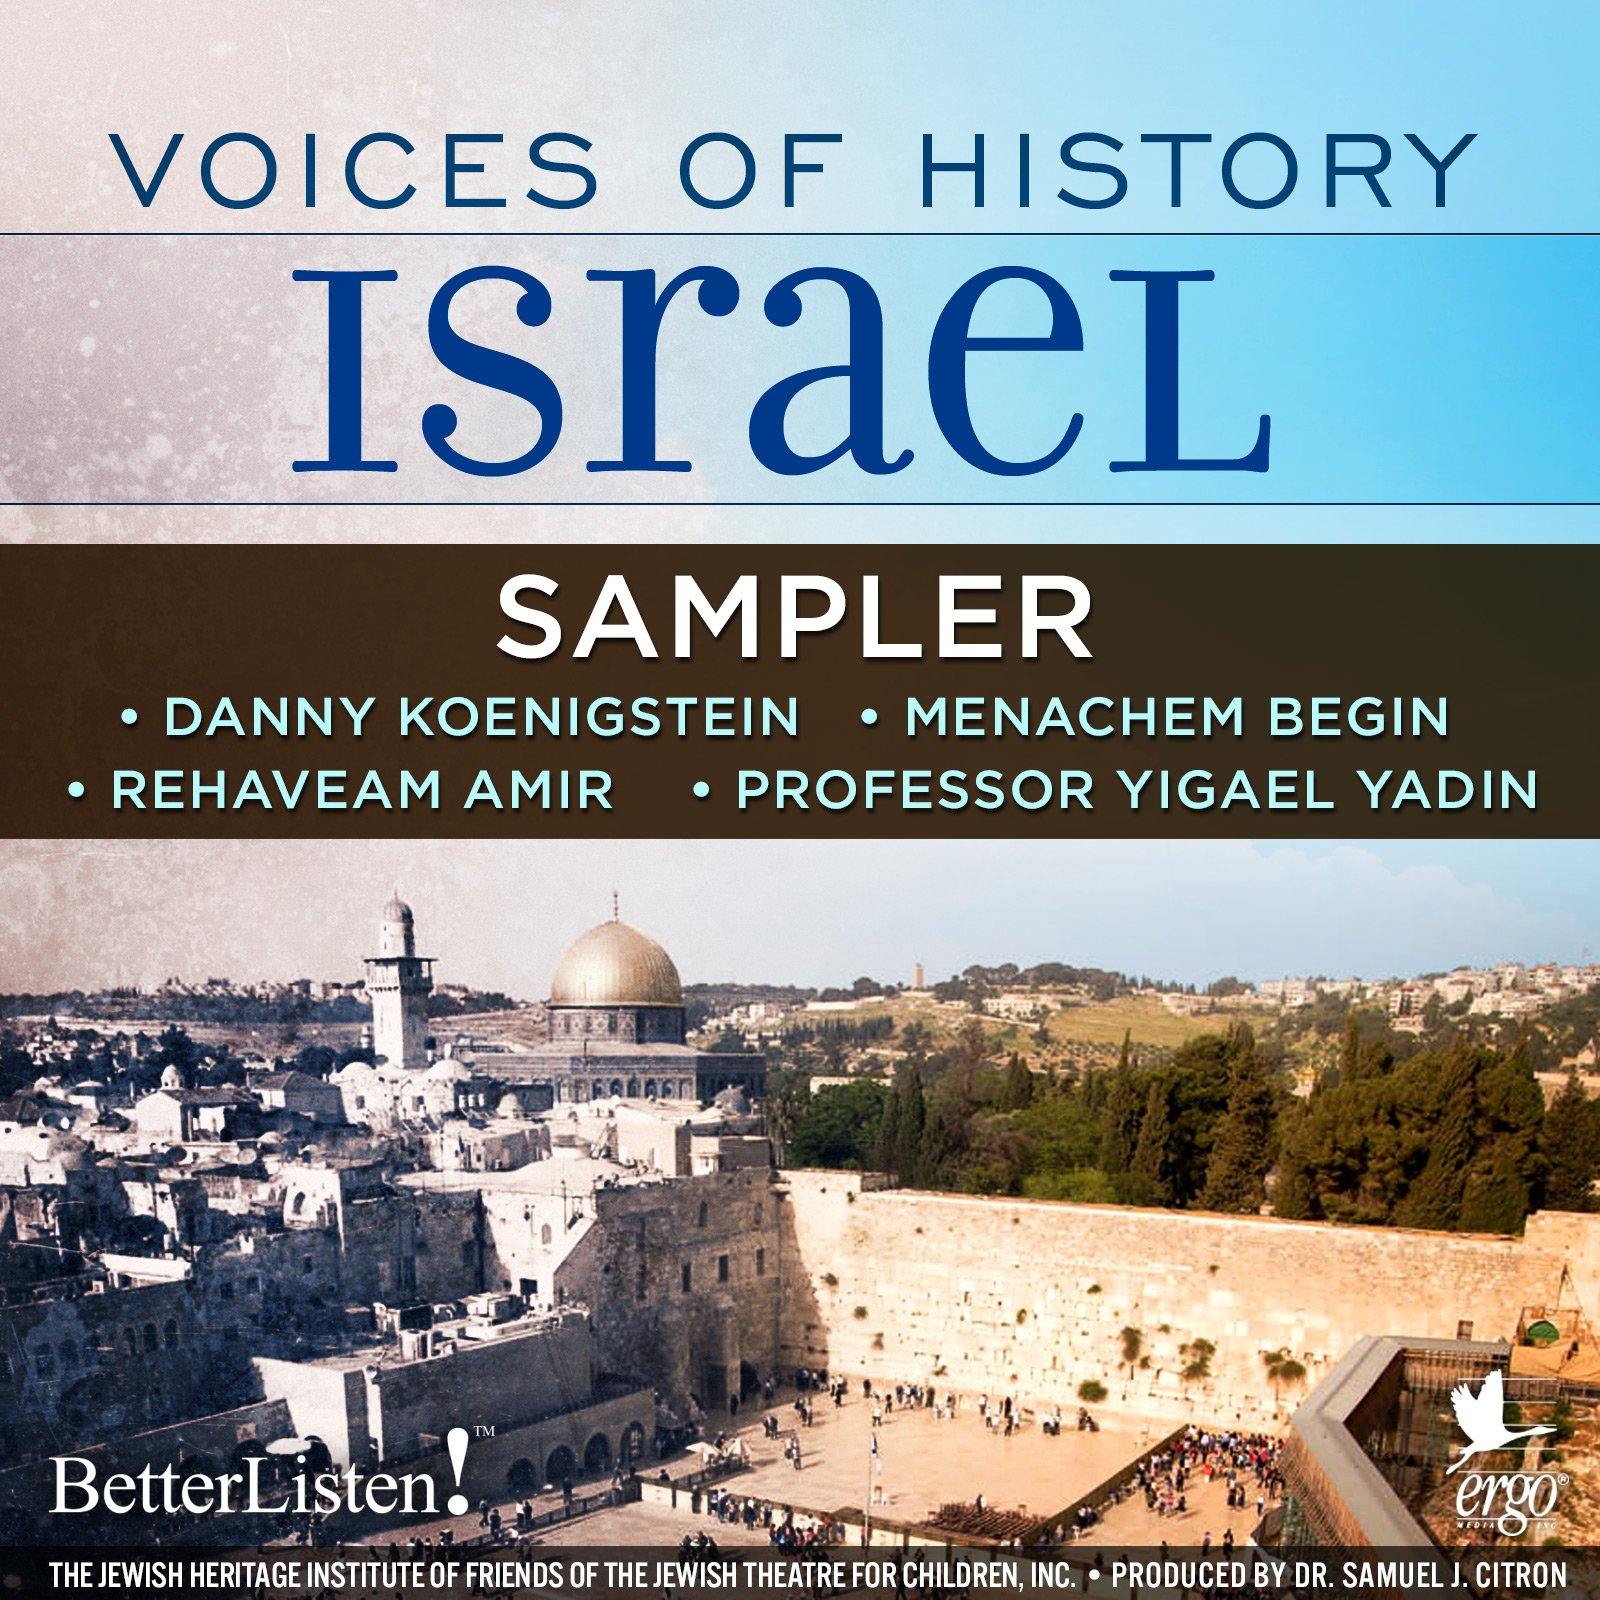 Voices of History Israel sampler - BetterListen!